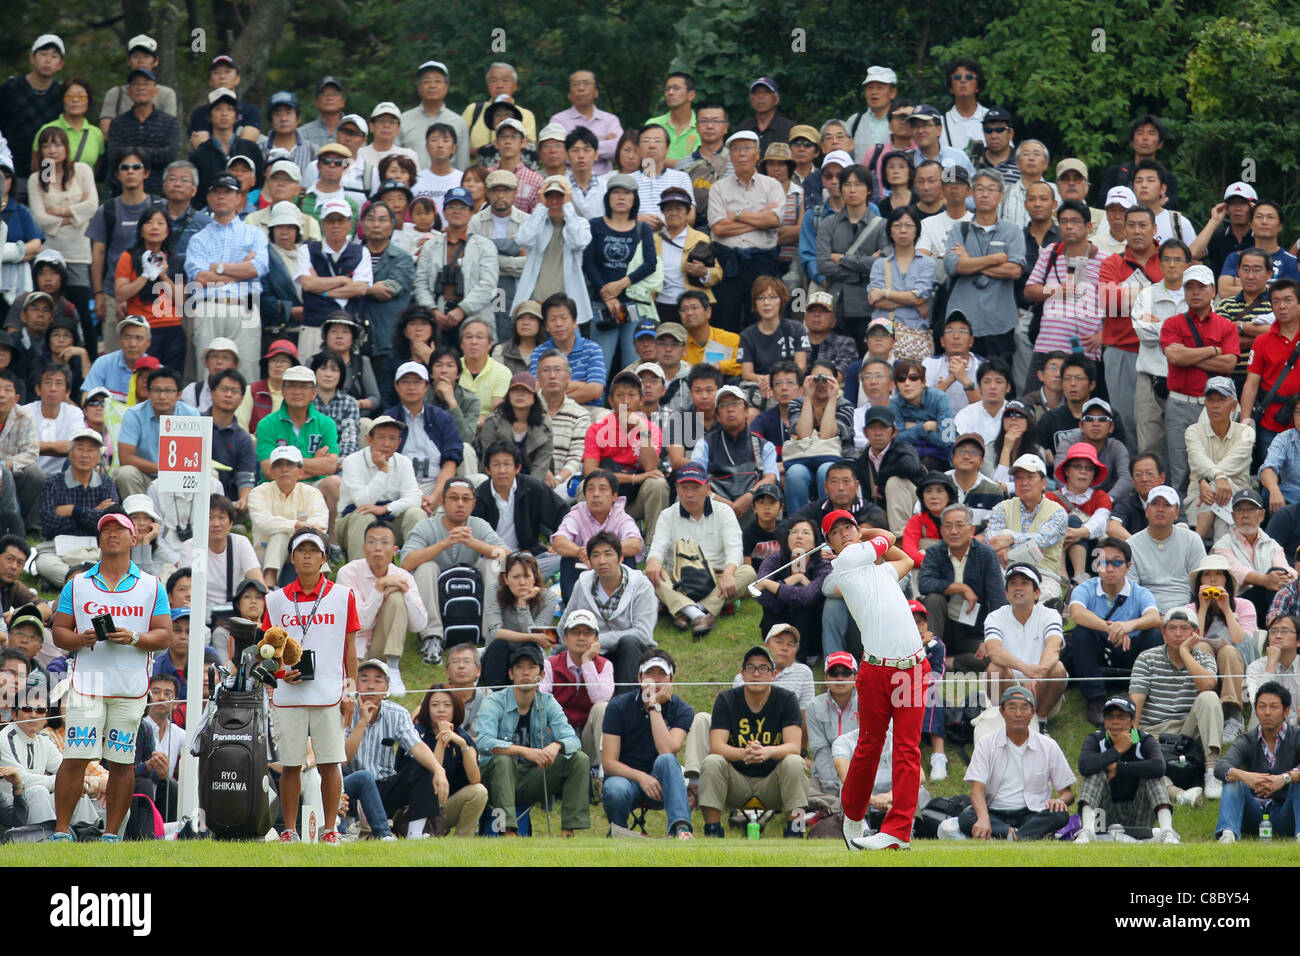 Ryo Ishikawa (JPN) desempeña durante la 13ª verde durante la final del torneo de golf abierto de Canon. Foto de stock